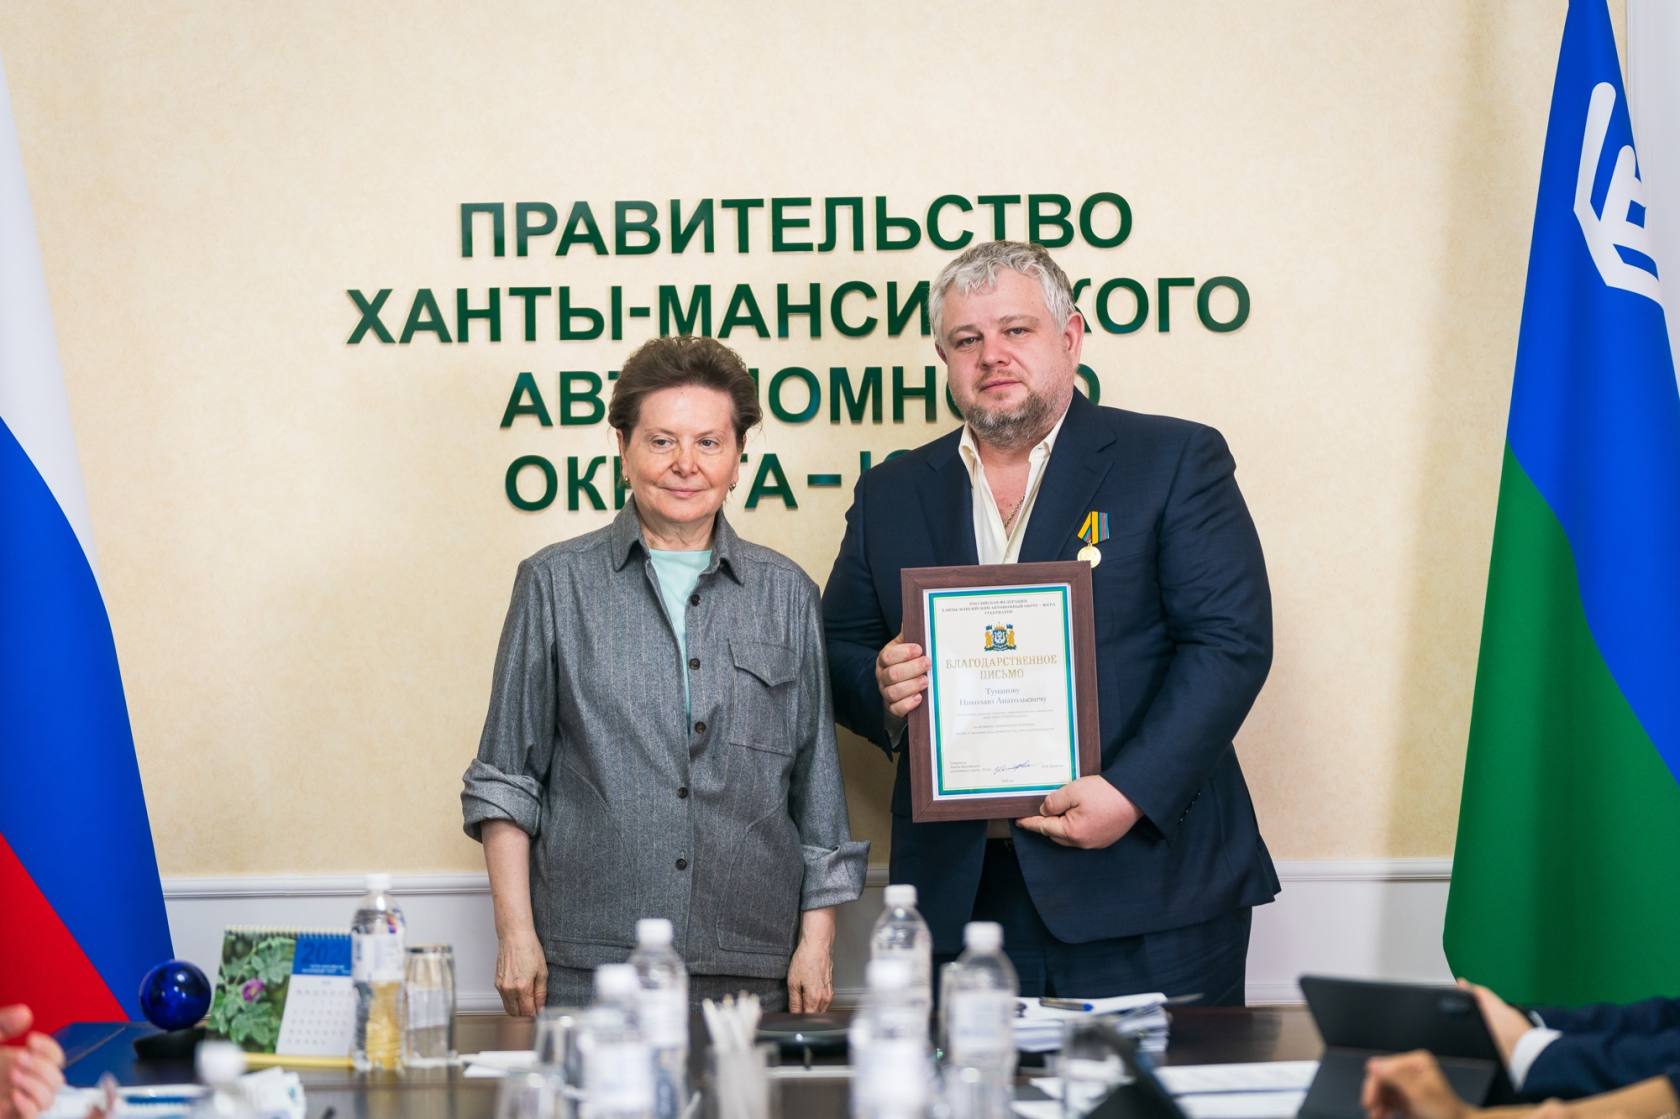 Предприниматели Нижневартовска получили награды от губернатора Югры